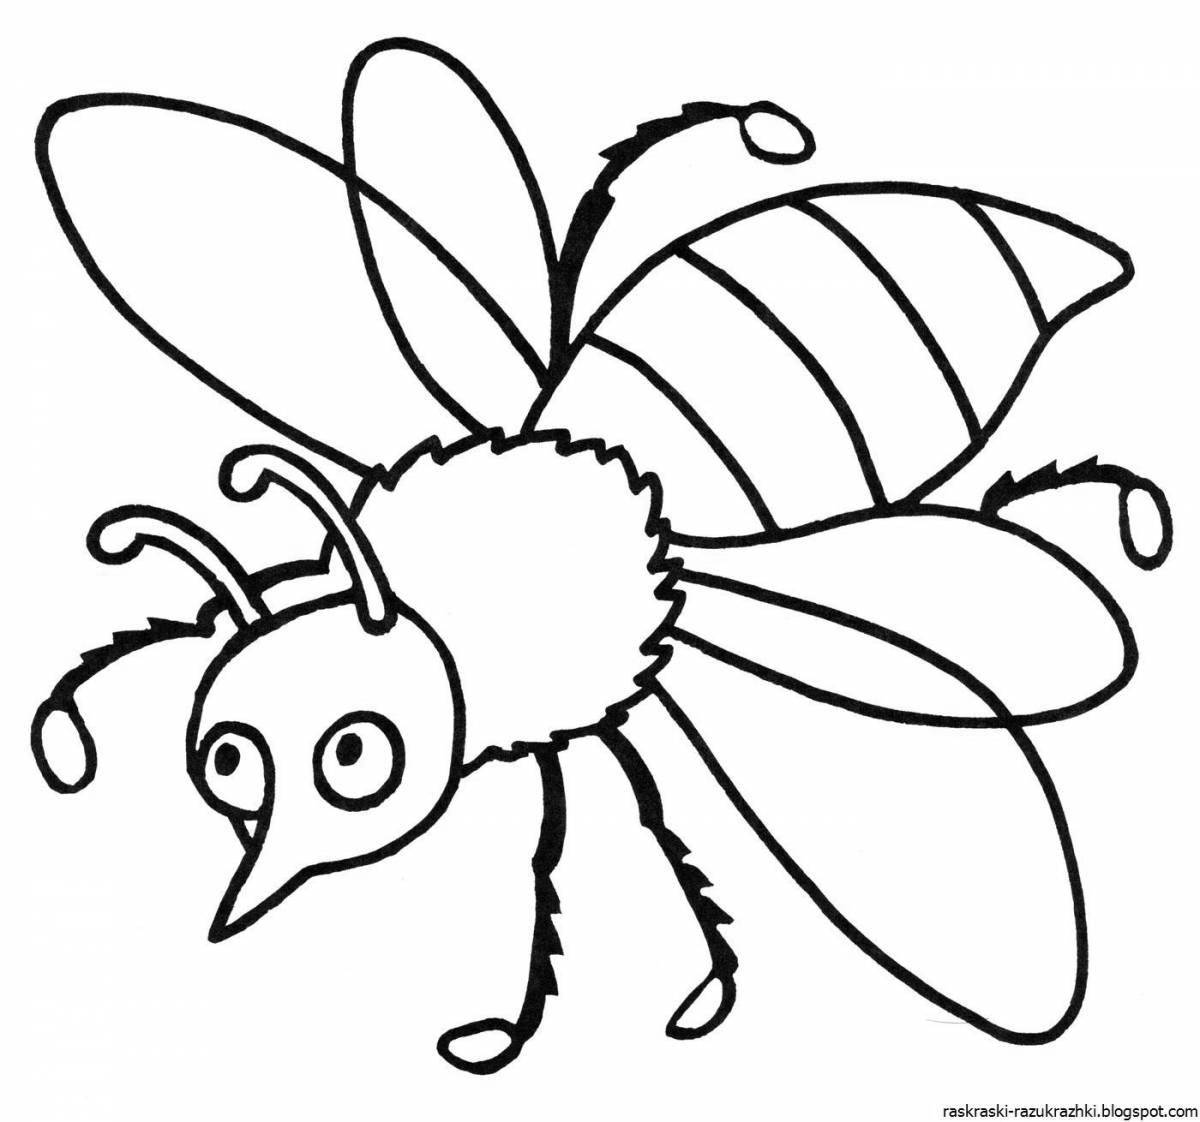 Развлекательная пчелиная раскраска для детей